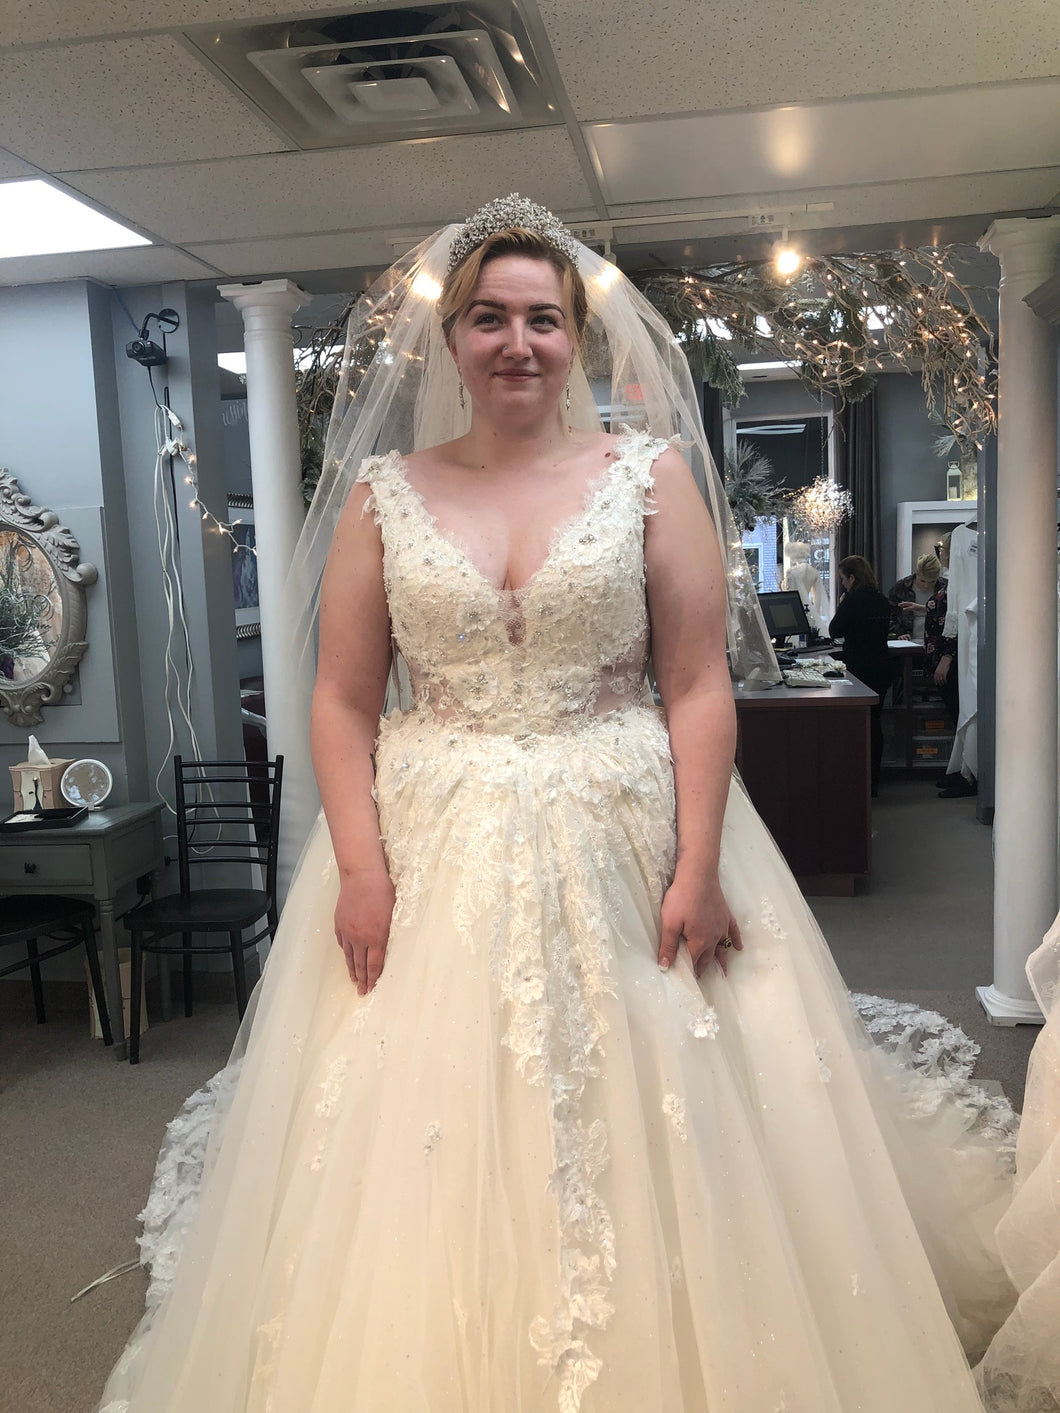 Randy Fenoli 'Anastasia ' wedding dress size-12 NEW